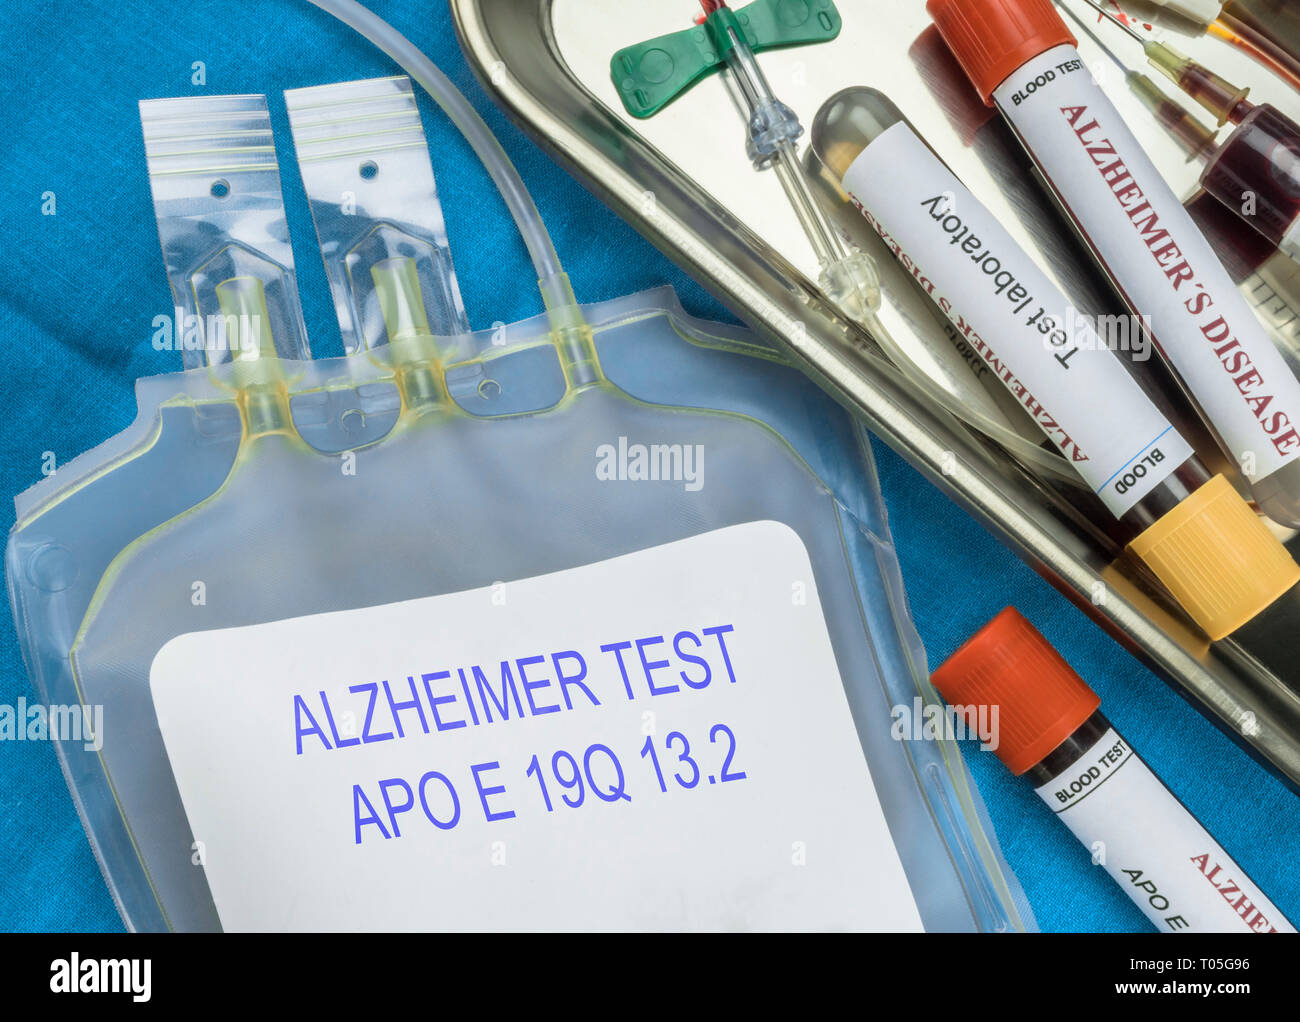 Test de la maladie d'Alzheimer par extraction de sang, de découverte récente permet de découvrir avec 16 ans à l'avance cette maladie, je conceptuel Banque D'Images